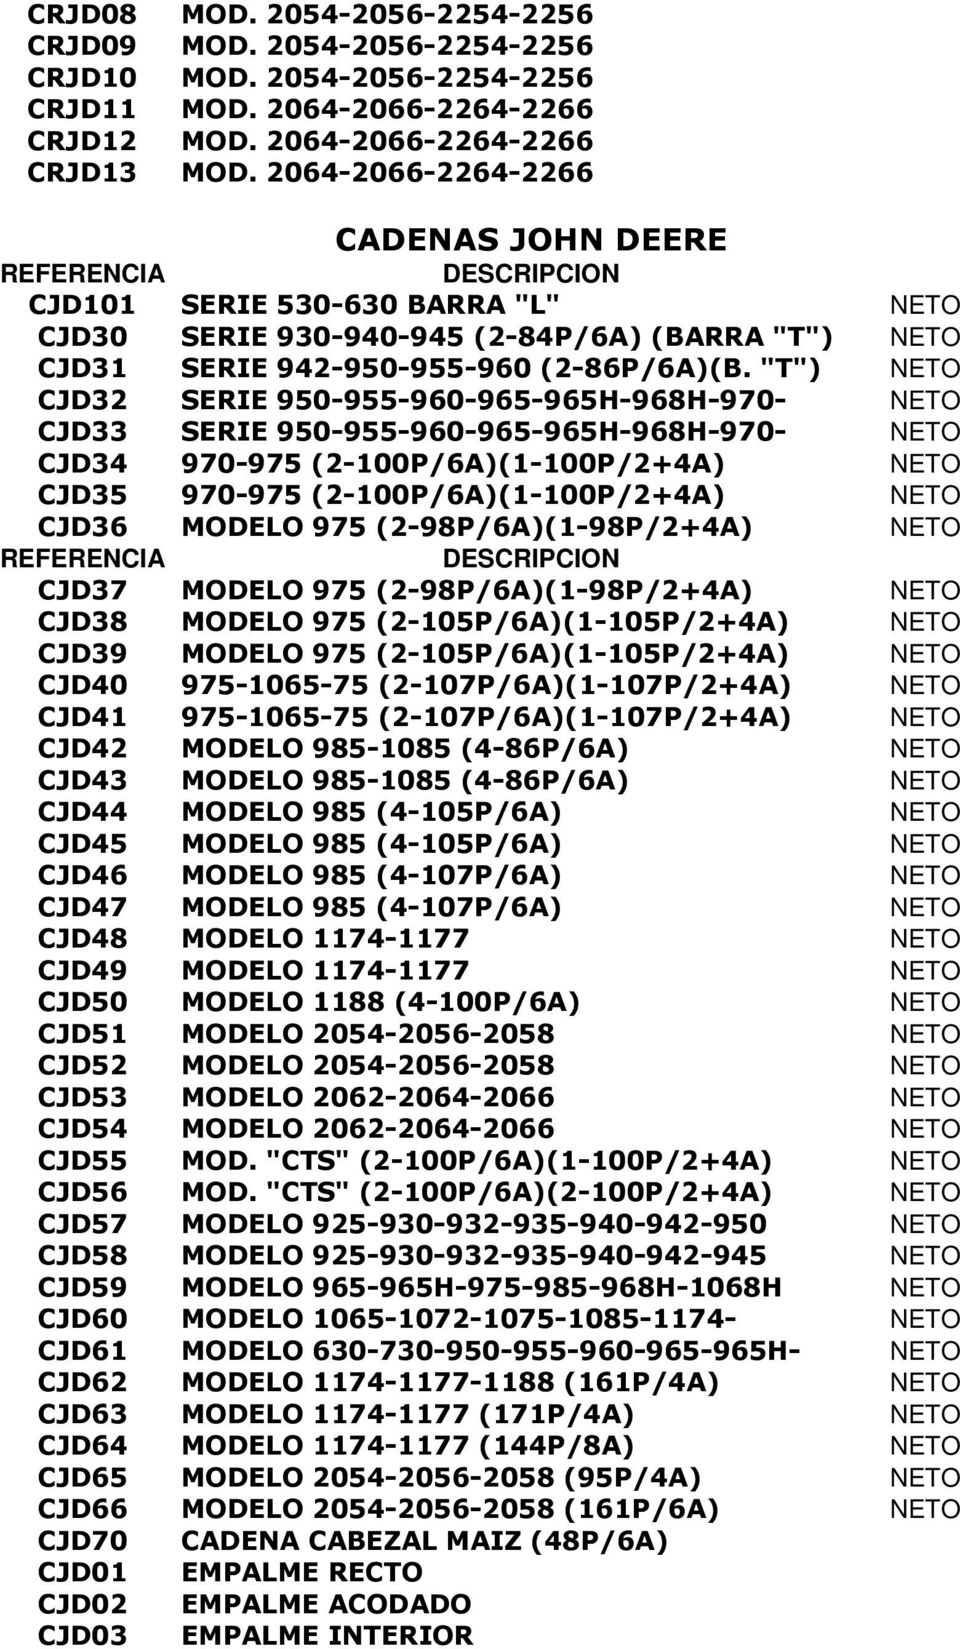 "T") NETO CJD32 SERIE 950-955-960-965-965H-968H-970- NETO CJD33 SERIE 950-955-960-965-965H-968H-970- NETO CJD34 970-975 (2-100P/6A)(1-100P/2+4A) NETO CJD35 970-975 (2-100P/6A)(1-100P/2+4A) NETO CJD36